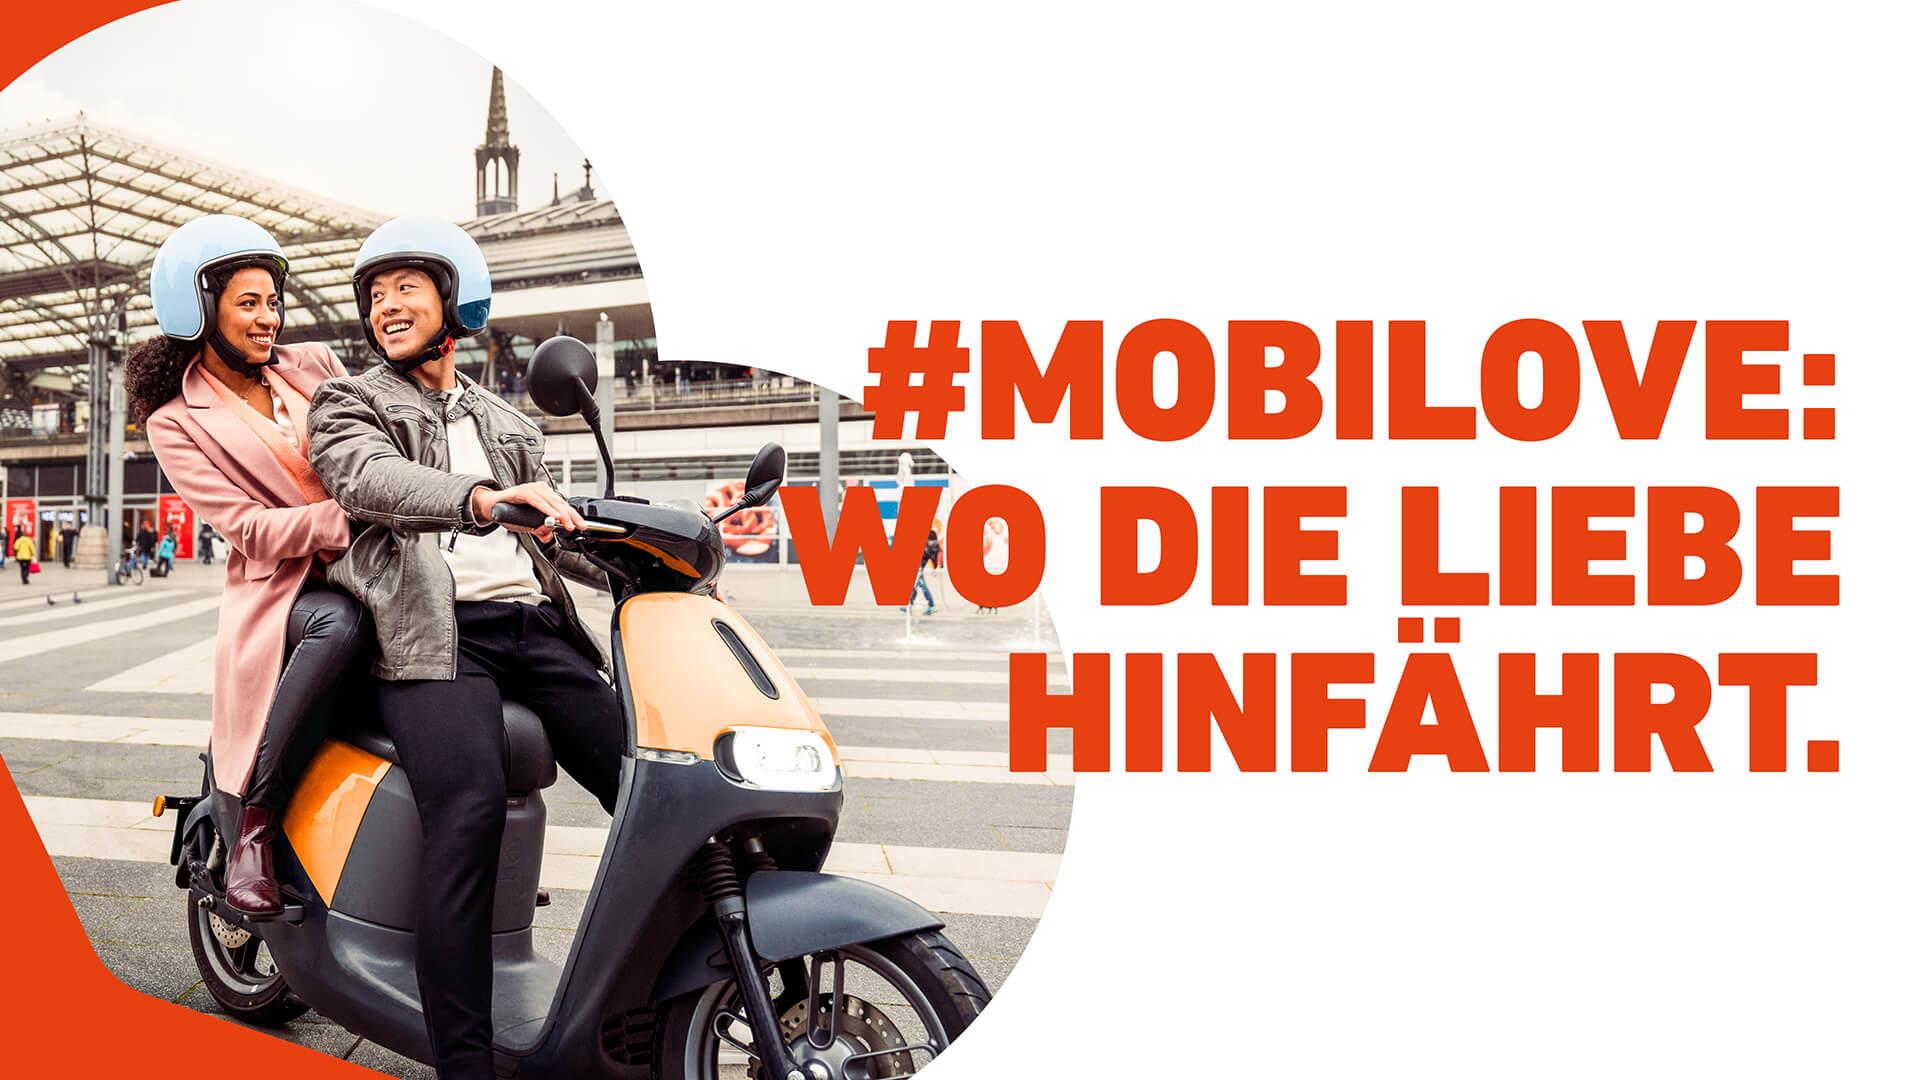 Mobilove-Kampagnenmotiv: Paar sitzt auf einem Roller